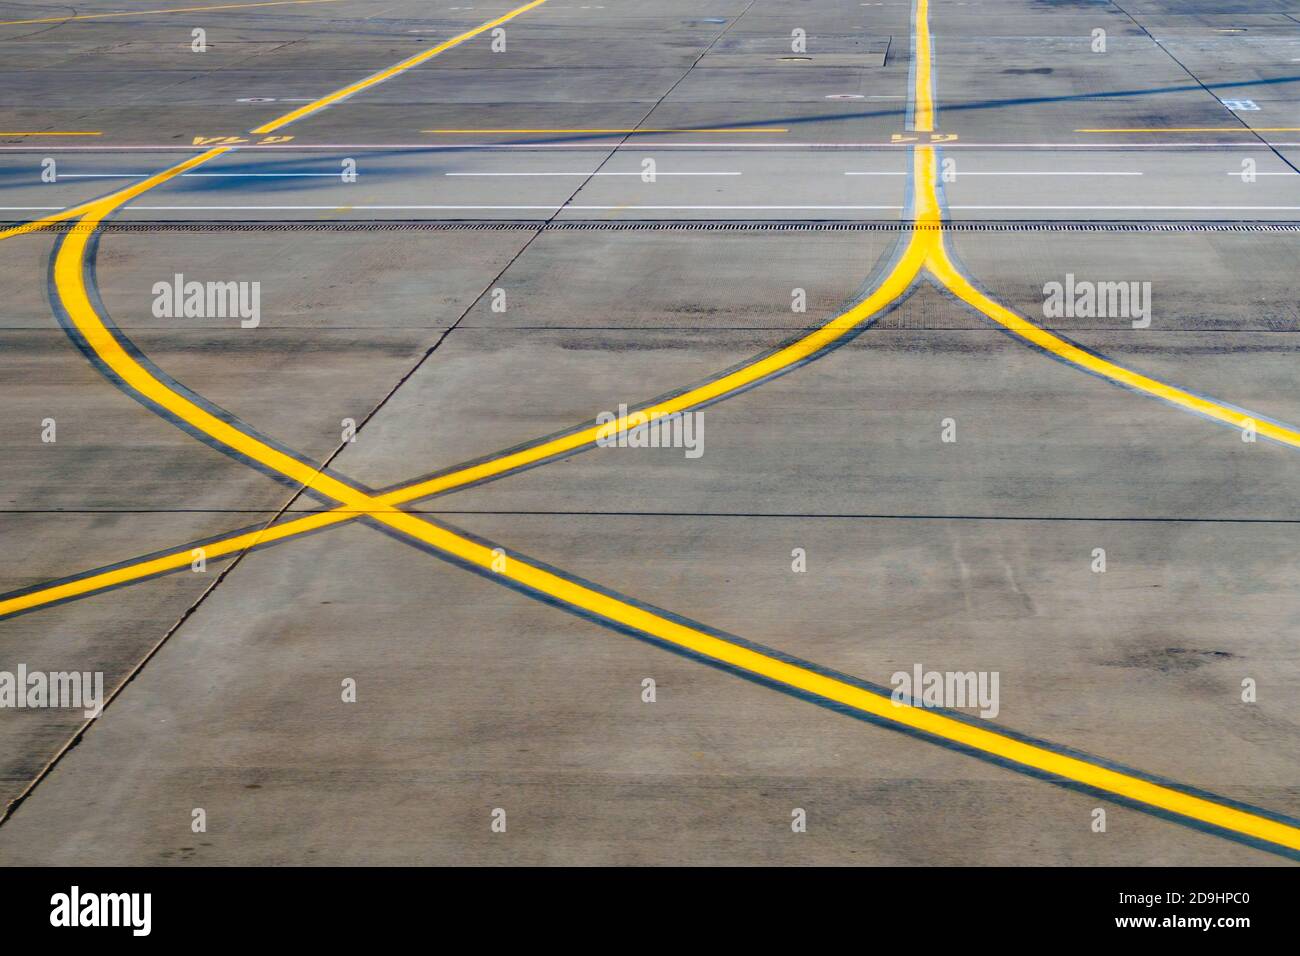 Piste d'aéroport, partie de route avec lignes de signalisation jaunes pour les avions, mise au point sélective Banque D'Images